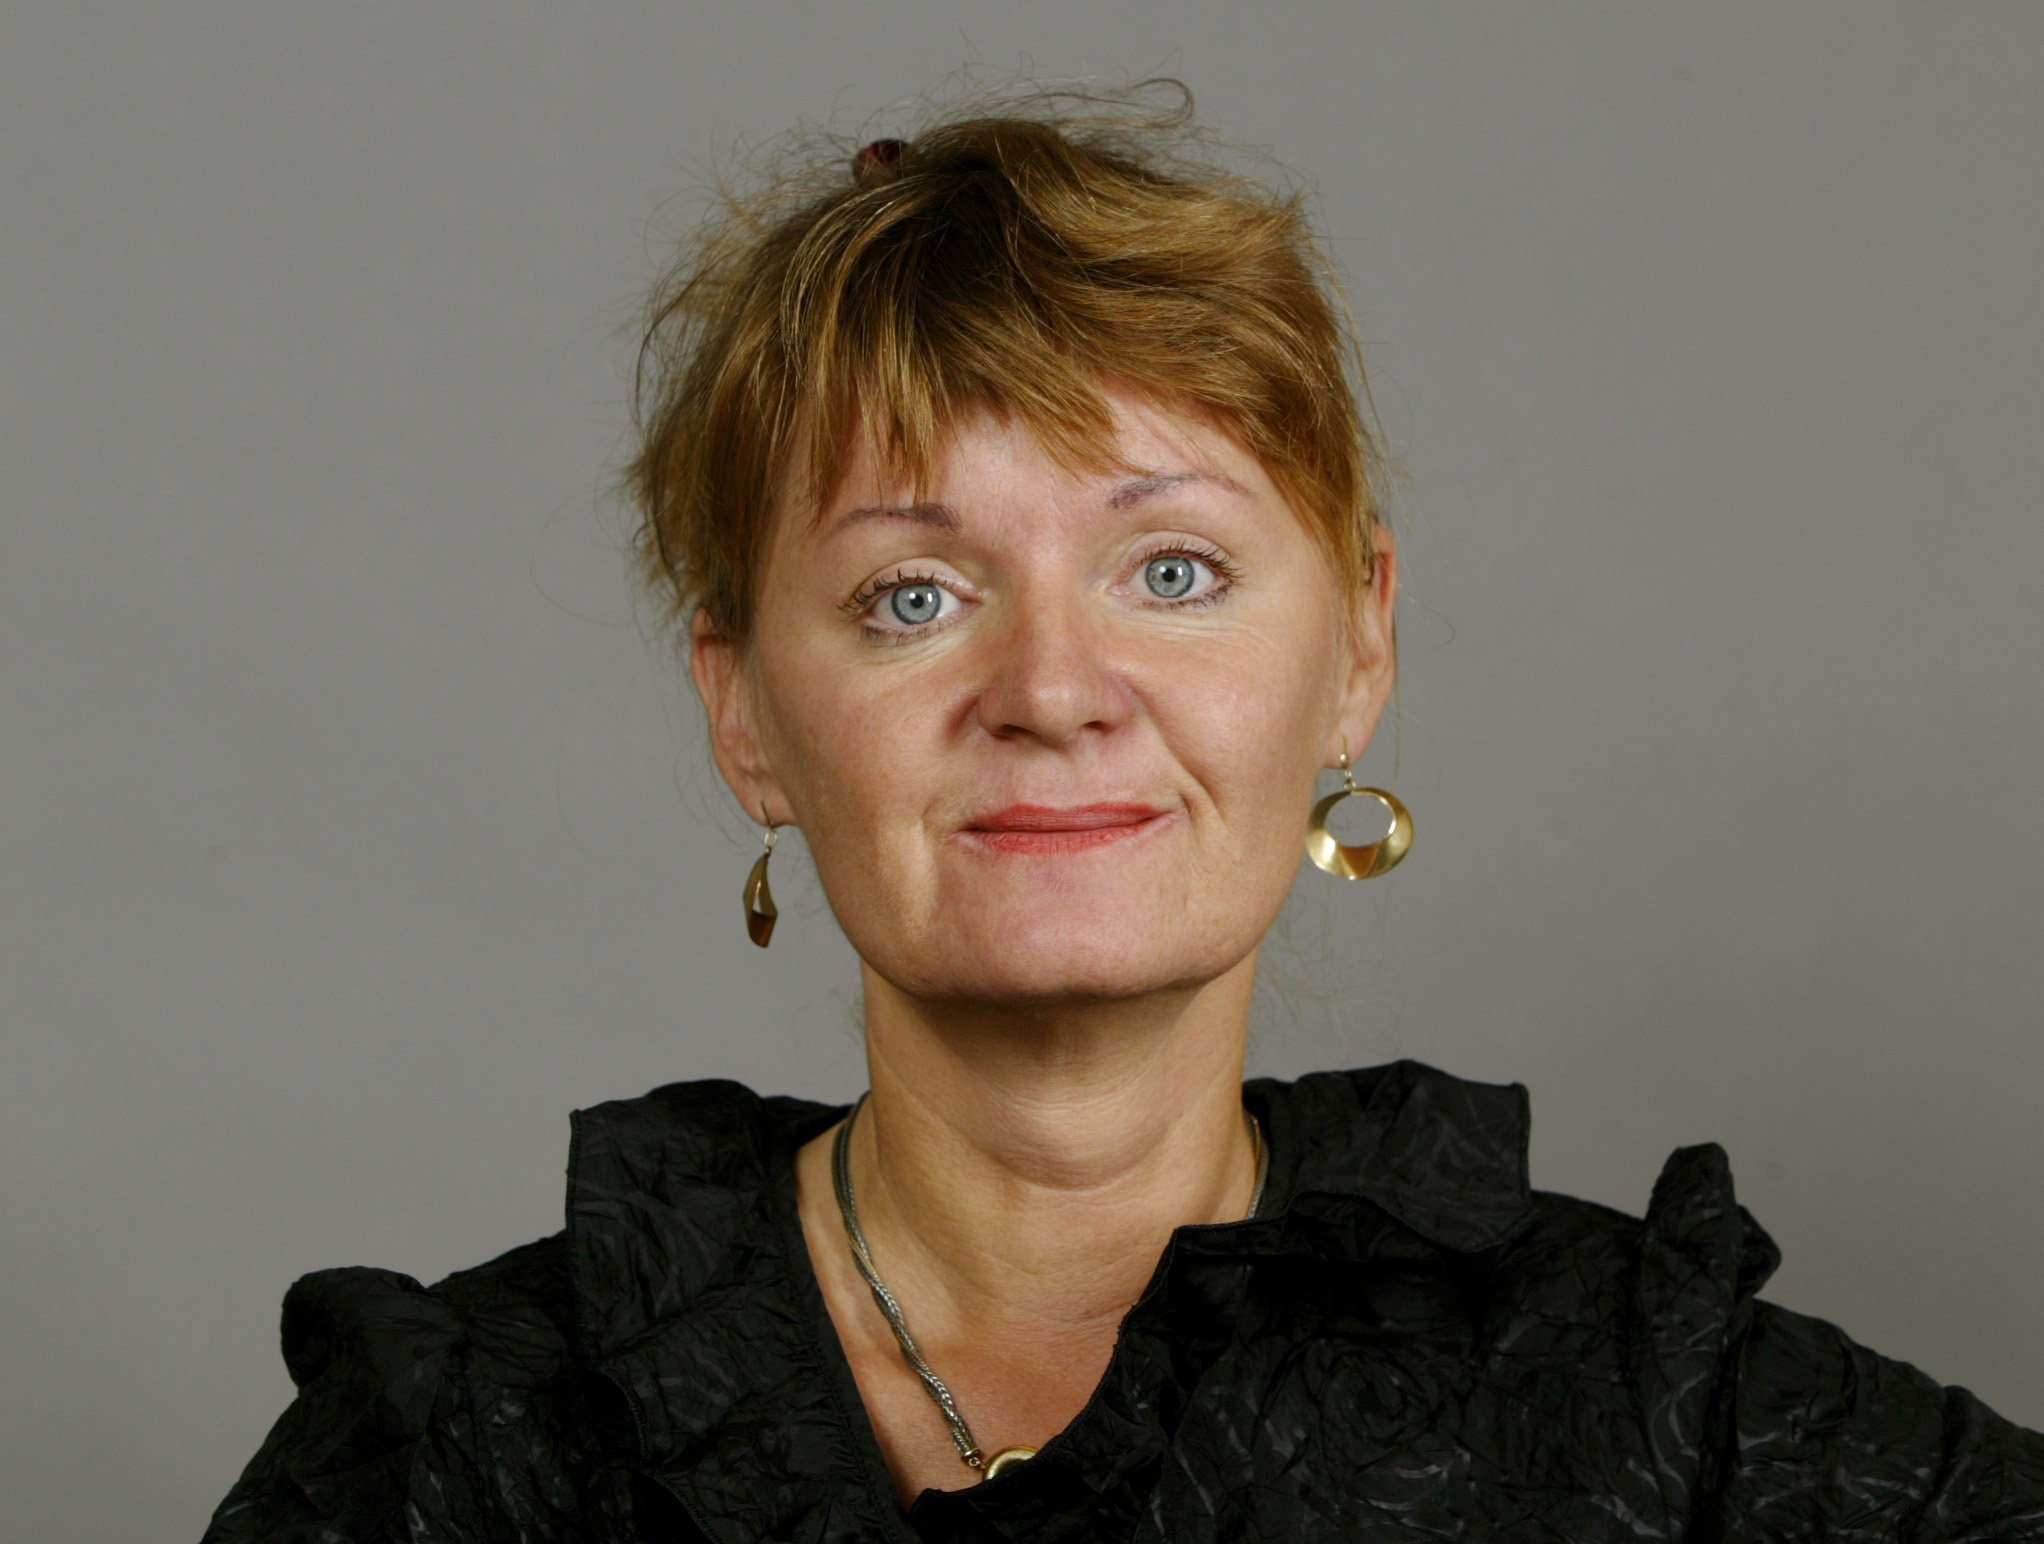 Feminism, Feministiskt initiativ, Carina Hägg, Sverigedemokraterna, Riksdagsvalet 2010, Gudrun Schyman, Alliansen